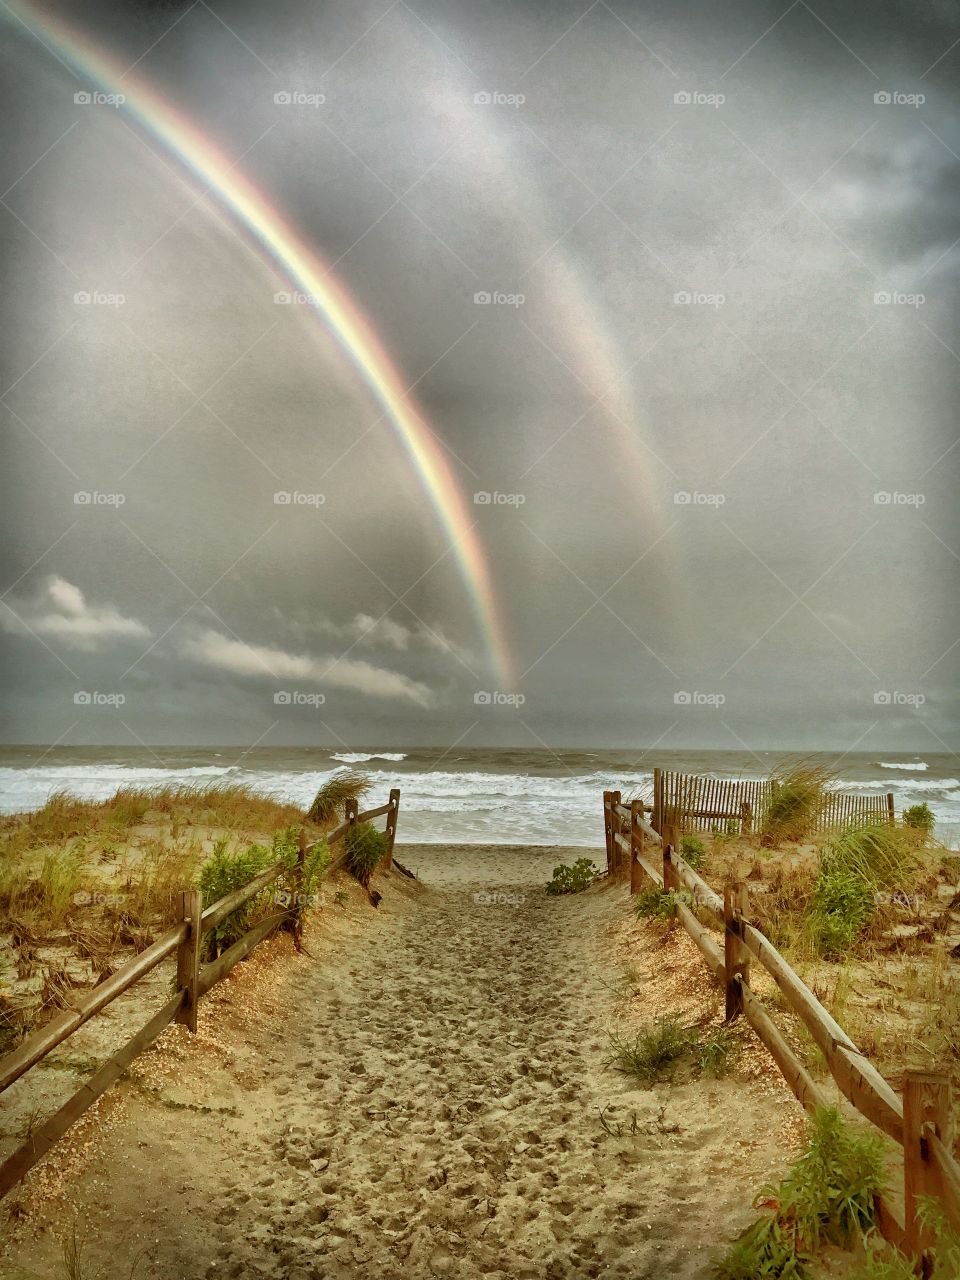 Double rainbow on a beach after a storm